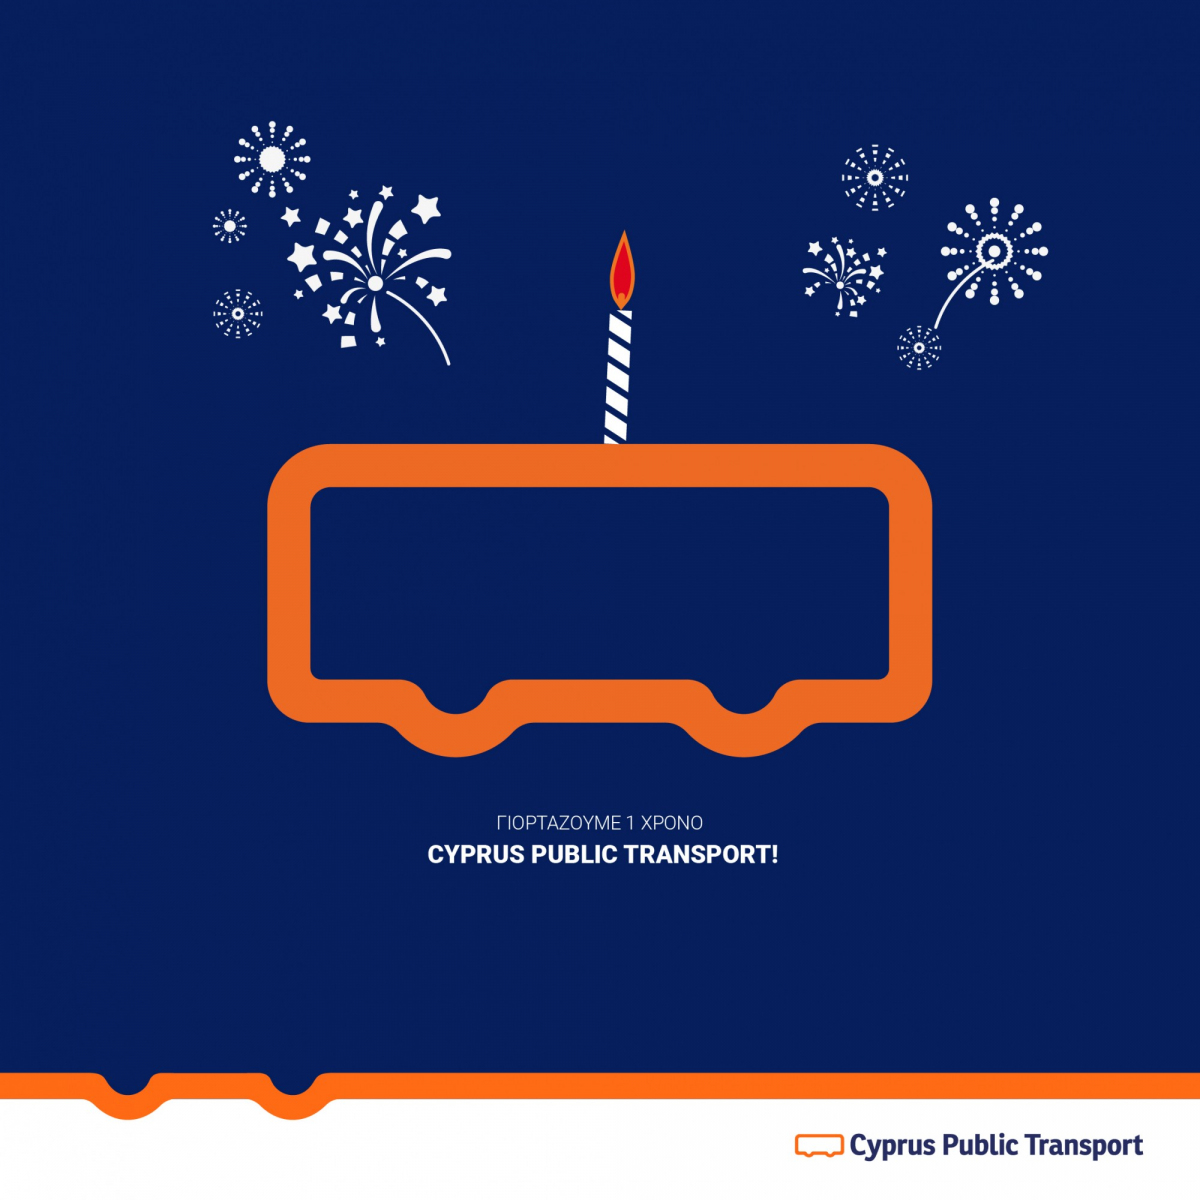 Η Cyprus Public Transport κλείνει έναν χρόνο λειτουργίας, έναν χρόνο νέας εποχής!